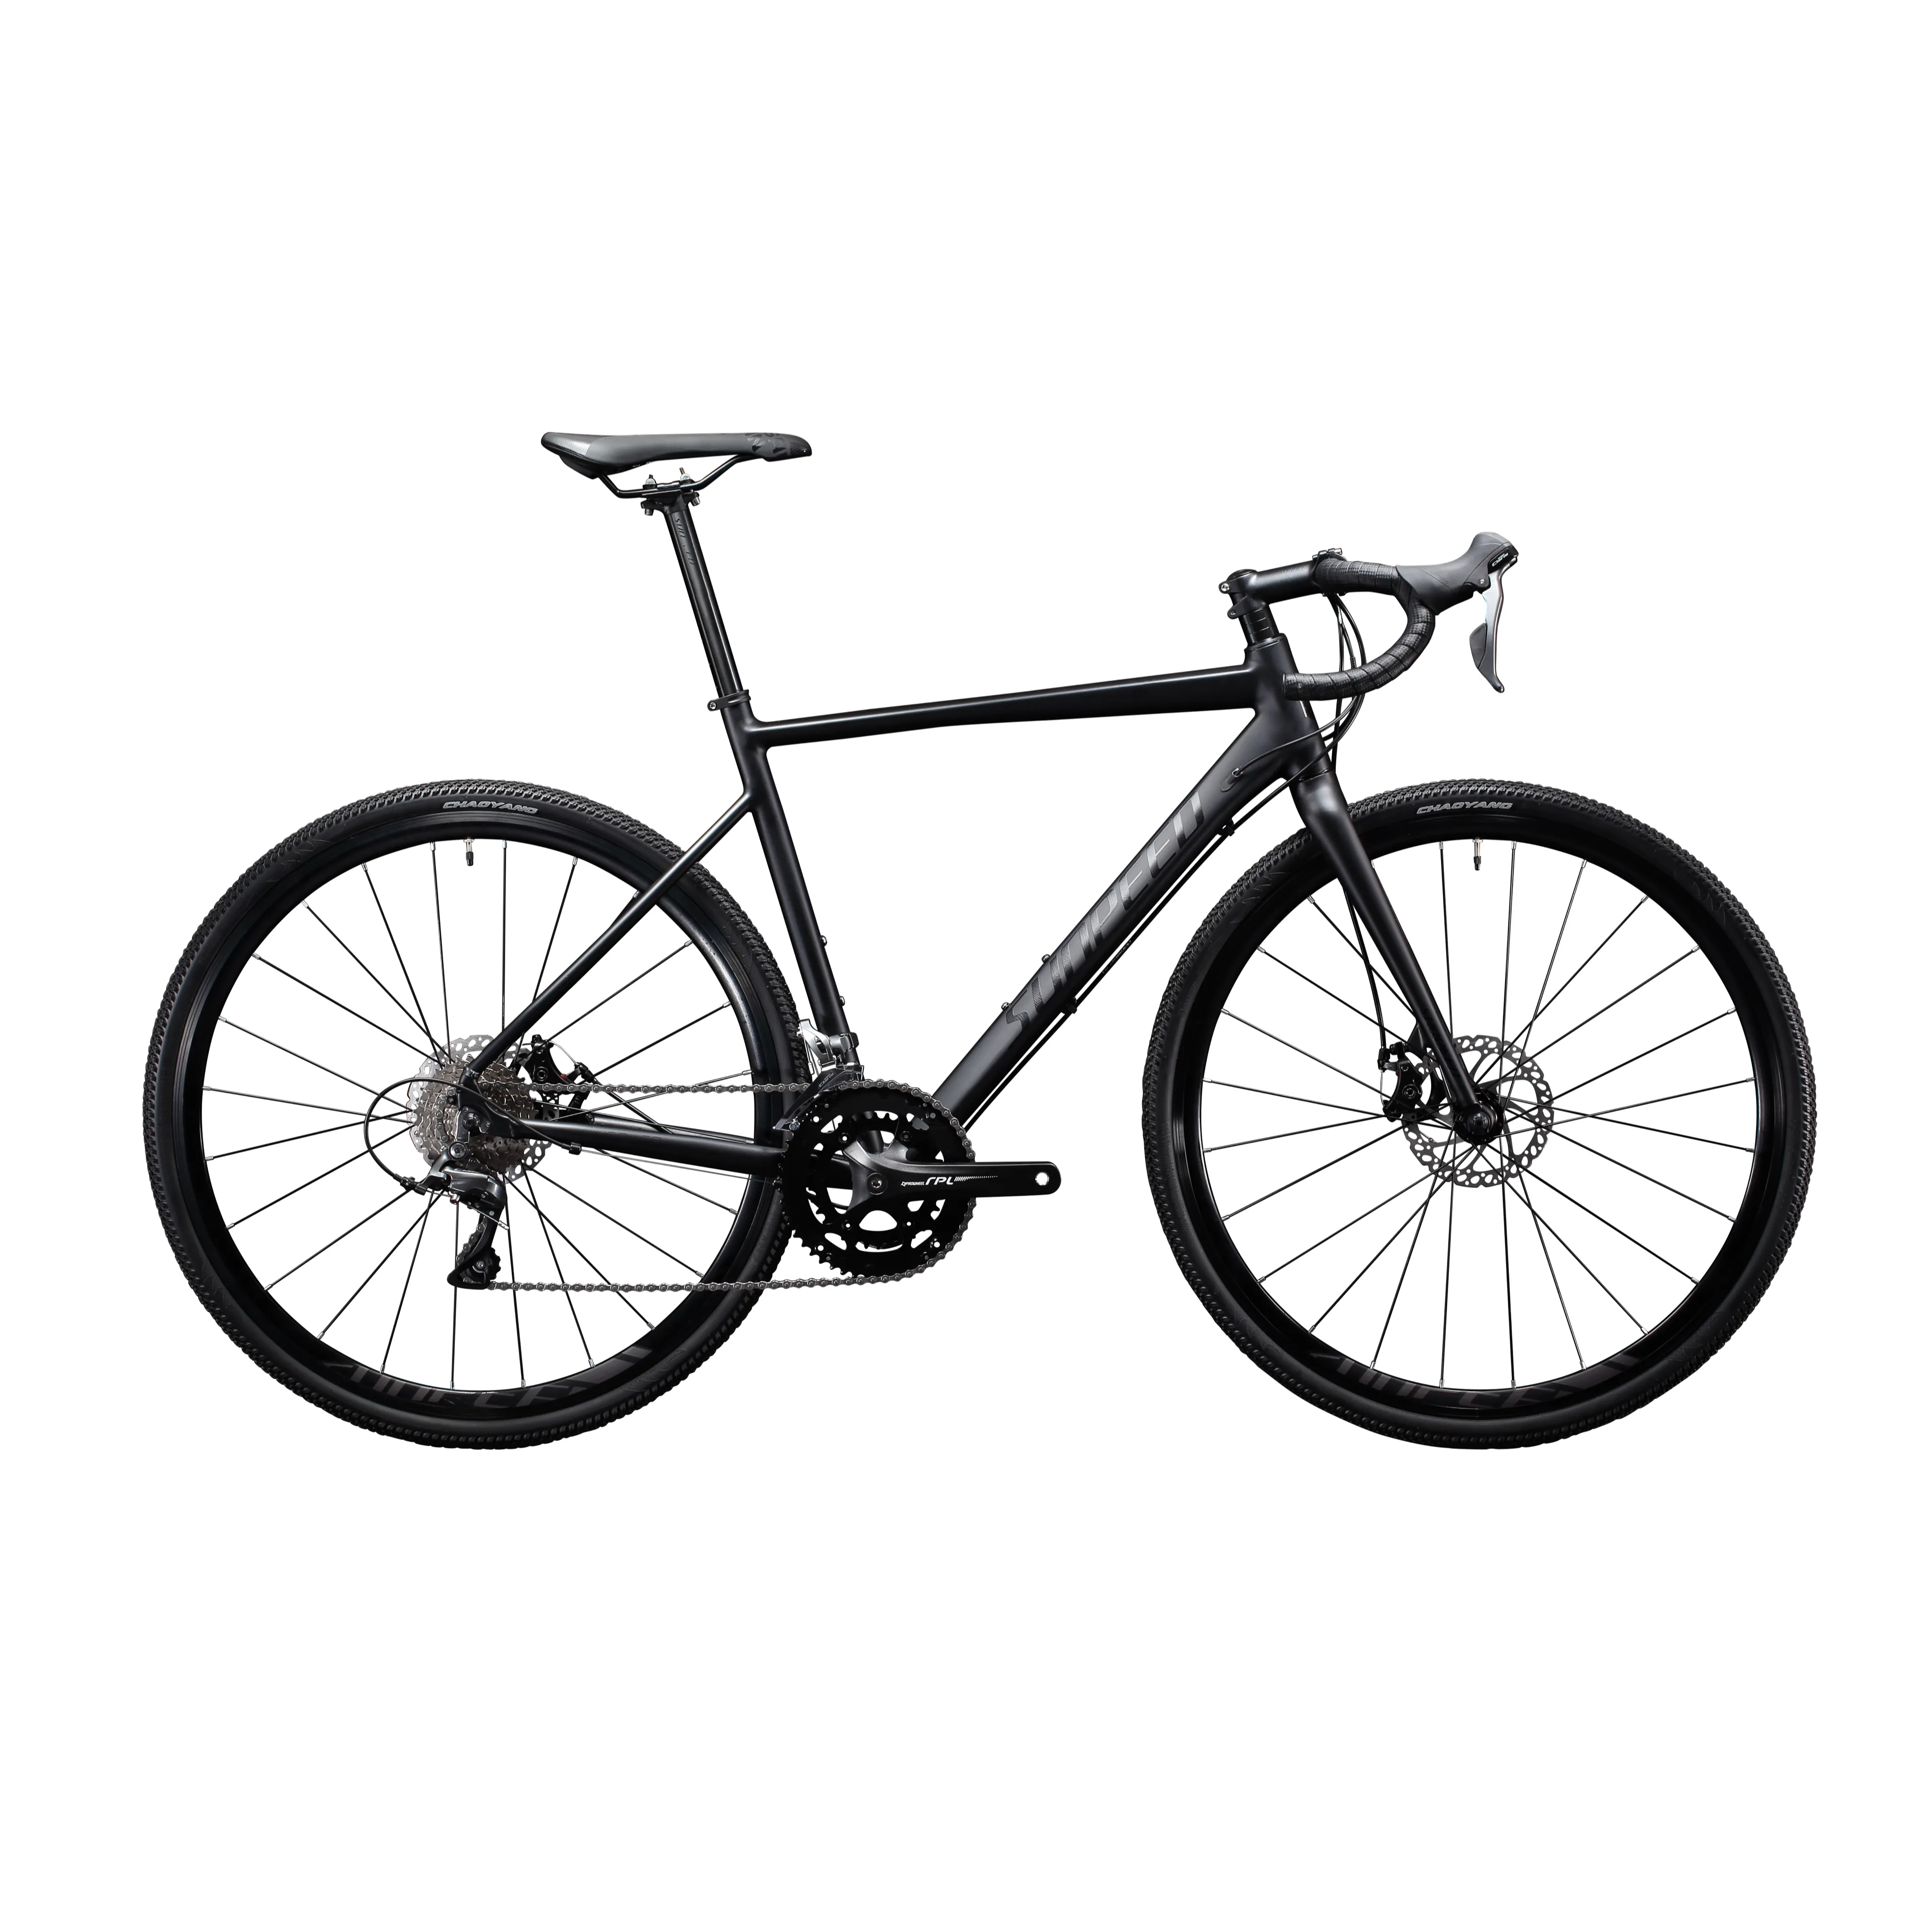 Sunpinces — vélo de route en aluminium 700C 18 vitesses, modèle 2021, kepler, avec disque